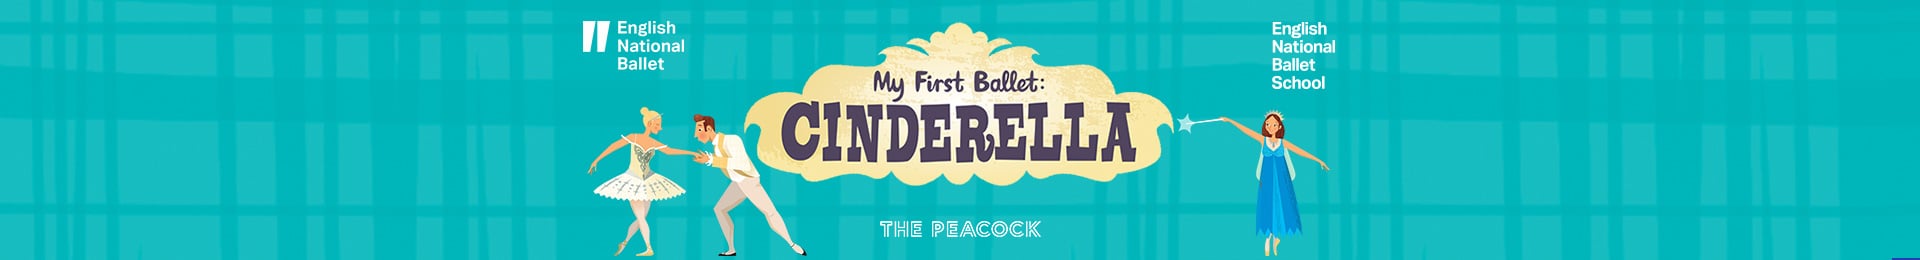 My First Ballet: Cinderella banner image